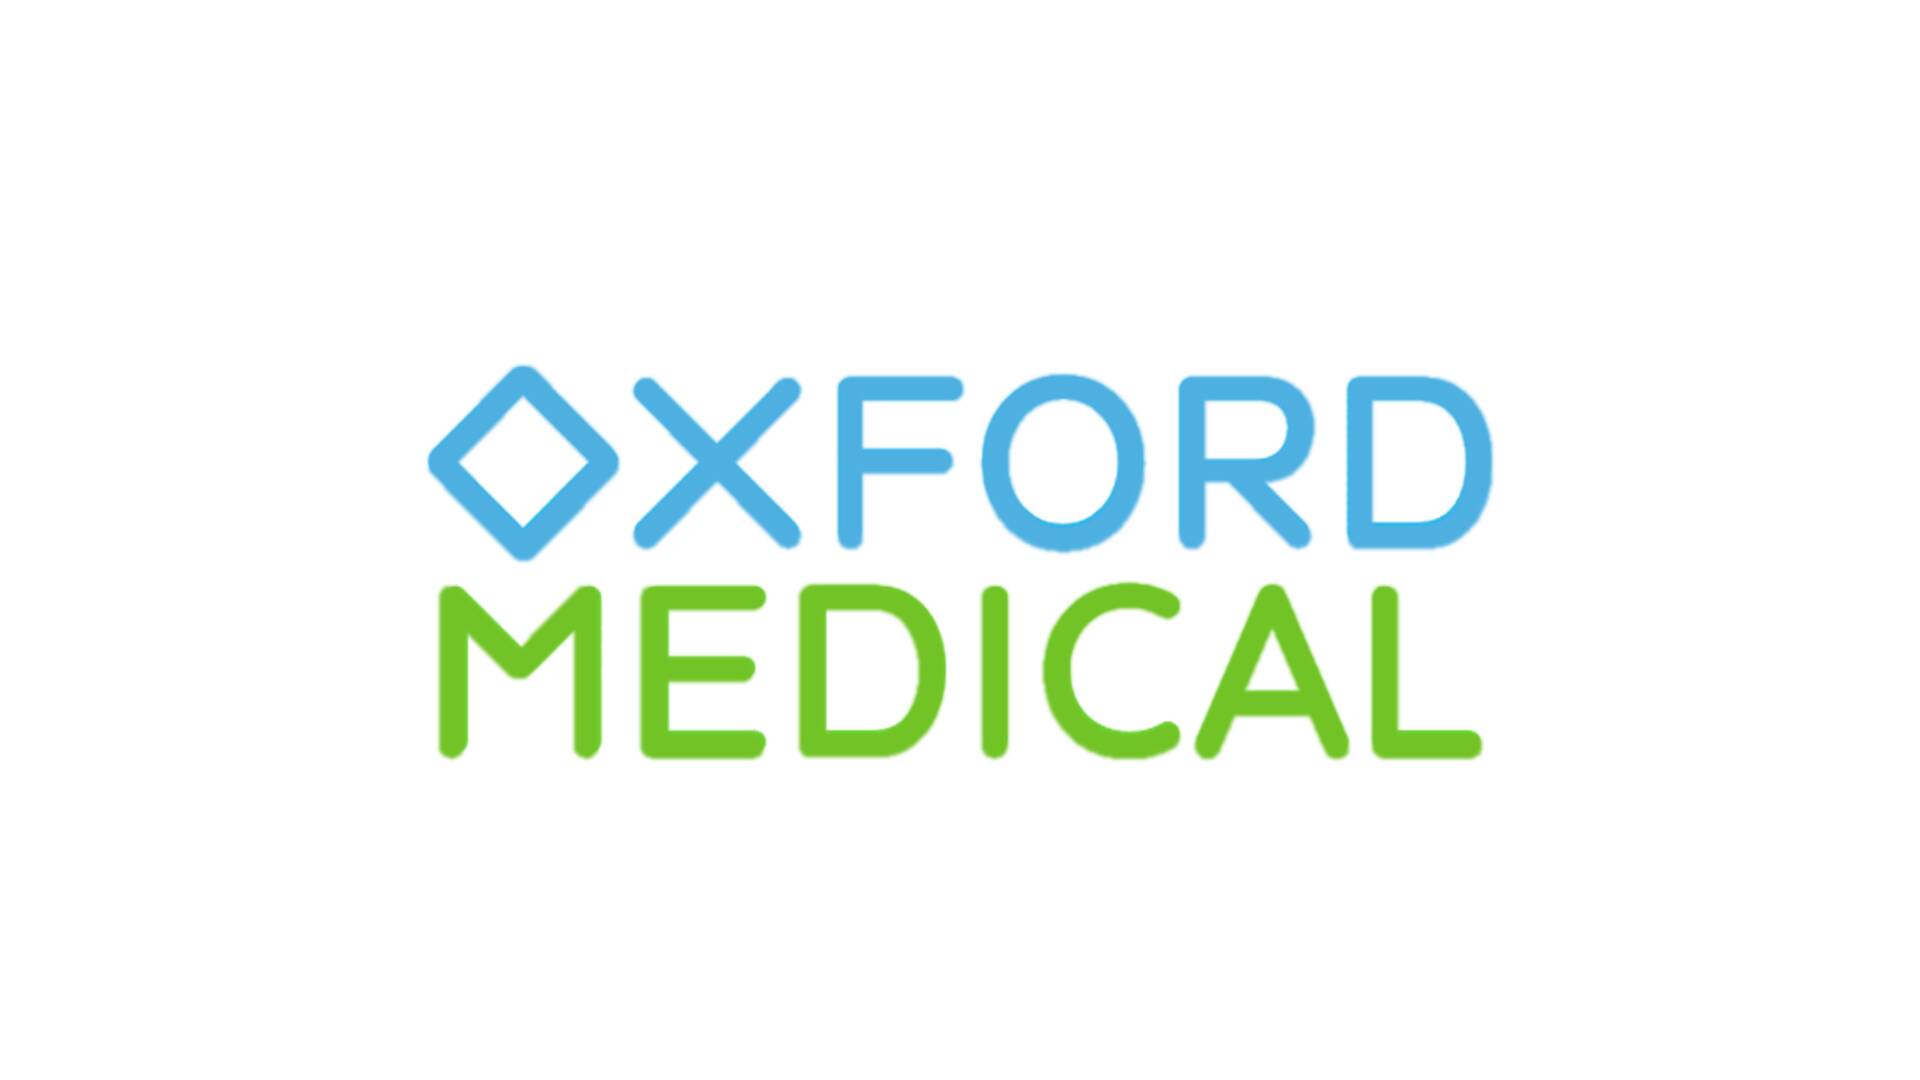 Медичний центр Клініка Оксфорд Медікал (Oxford Medical) в Вінниці ВІННИЦЯ: опис, послуги, відгуки, рейтинг, контакти, записатися онлайн на сайті h24.ua